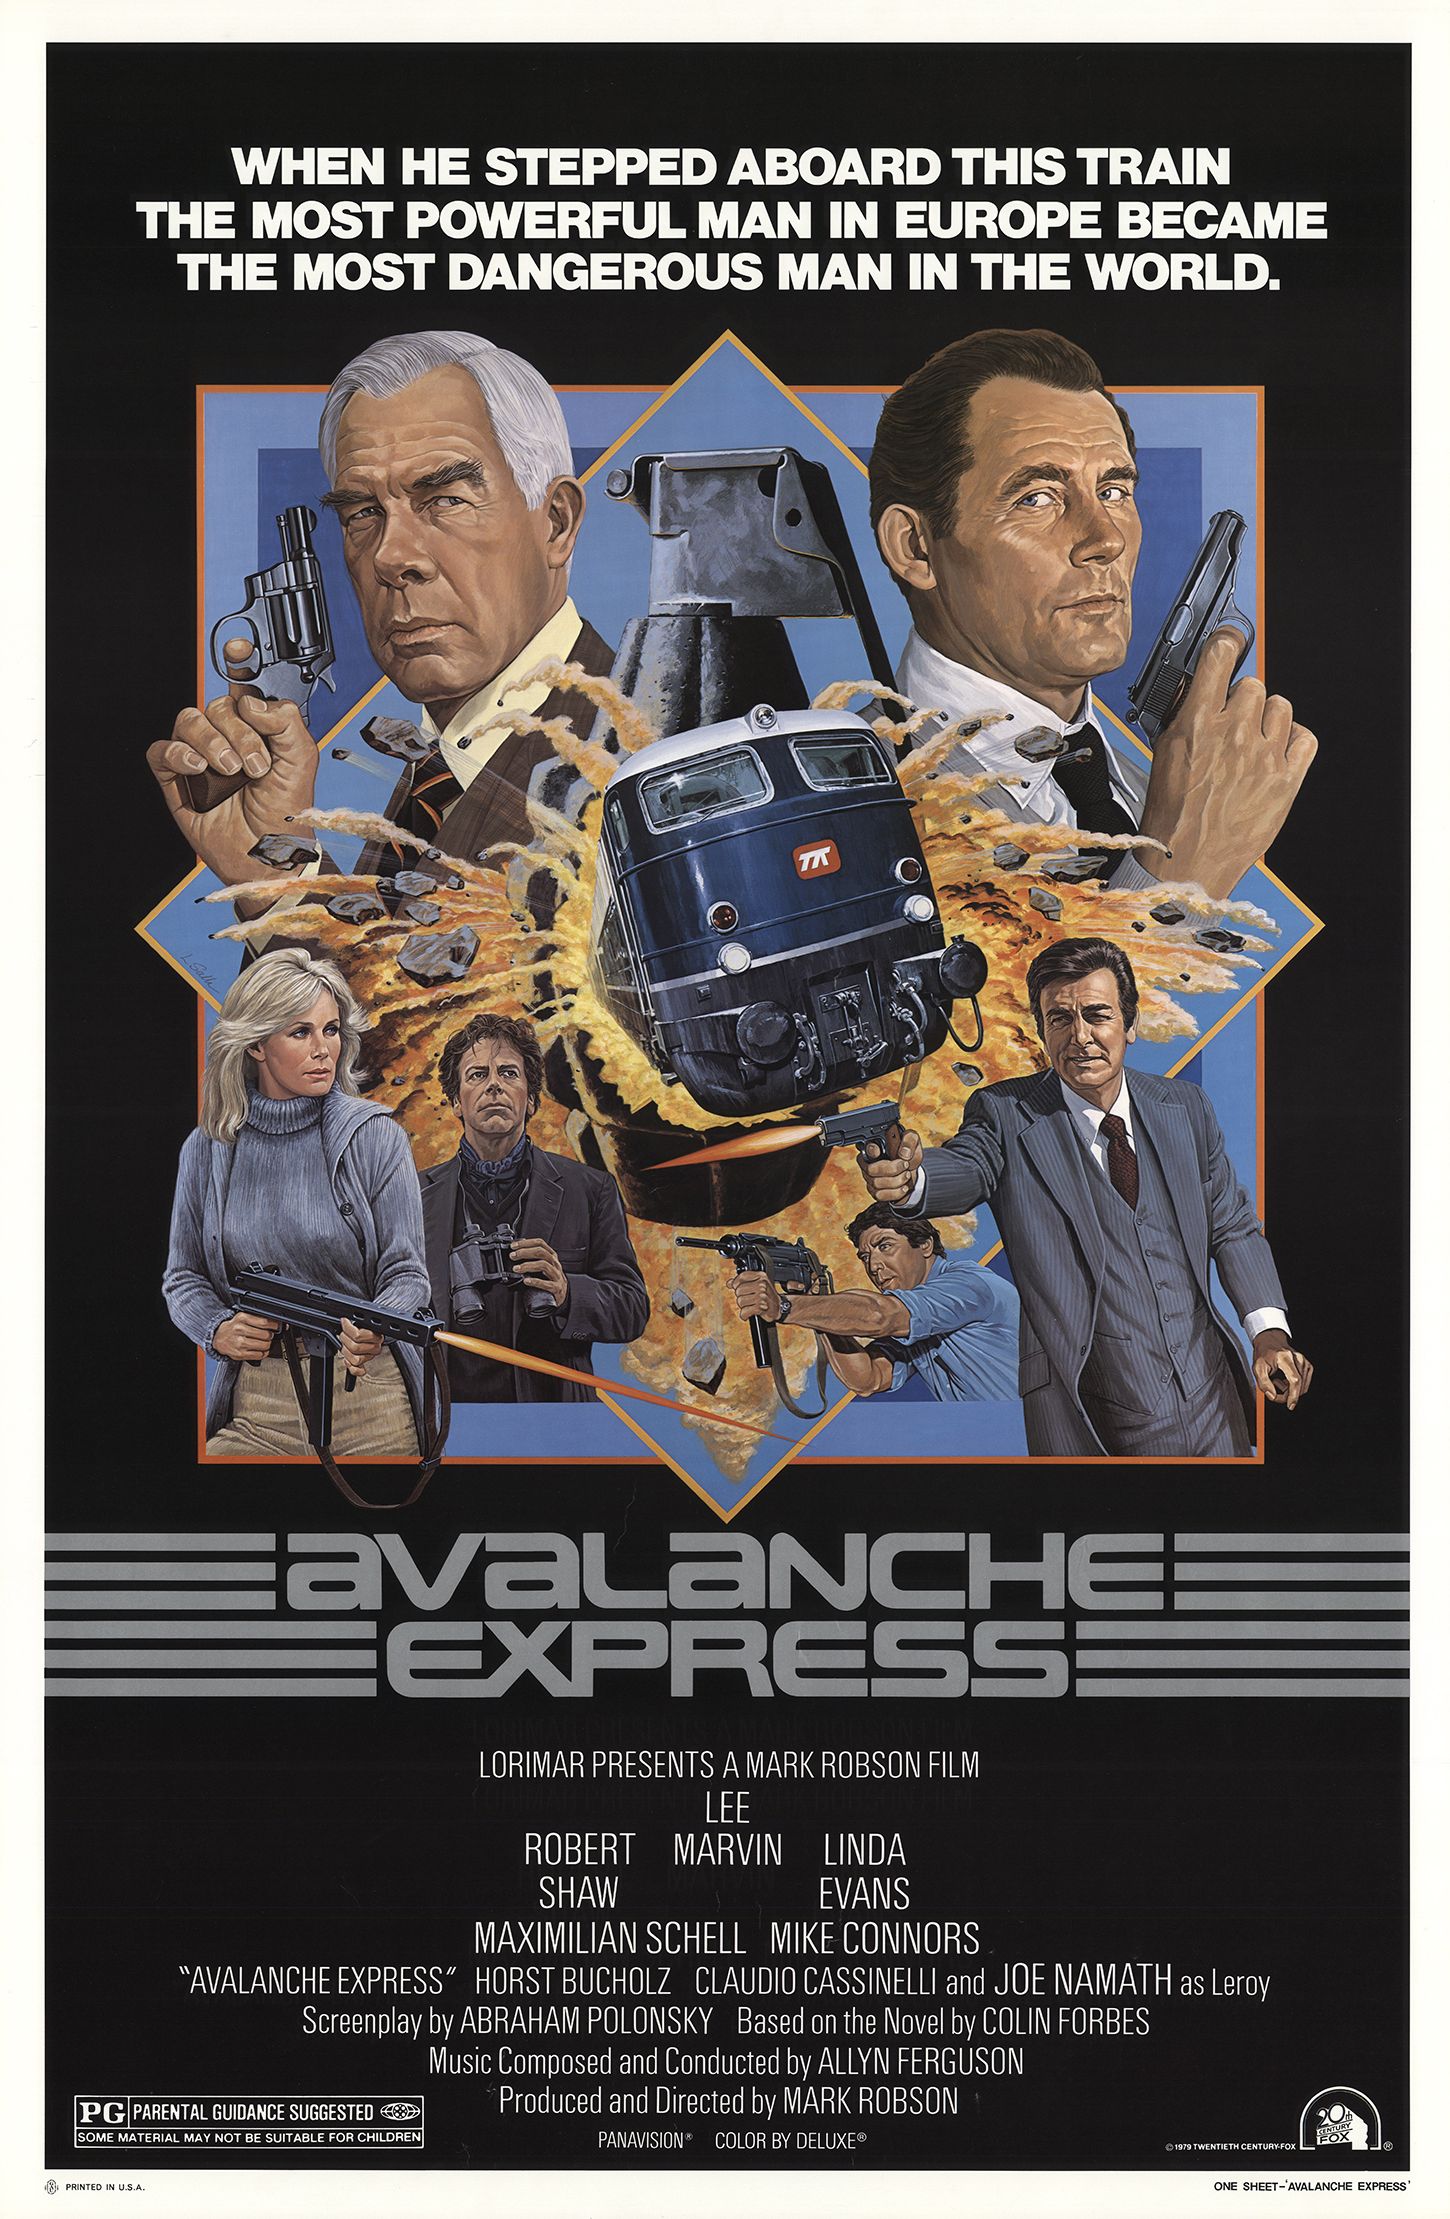 Lawinen Express [Avalanche Express] - DVD Verleih online (Schweiz)